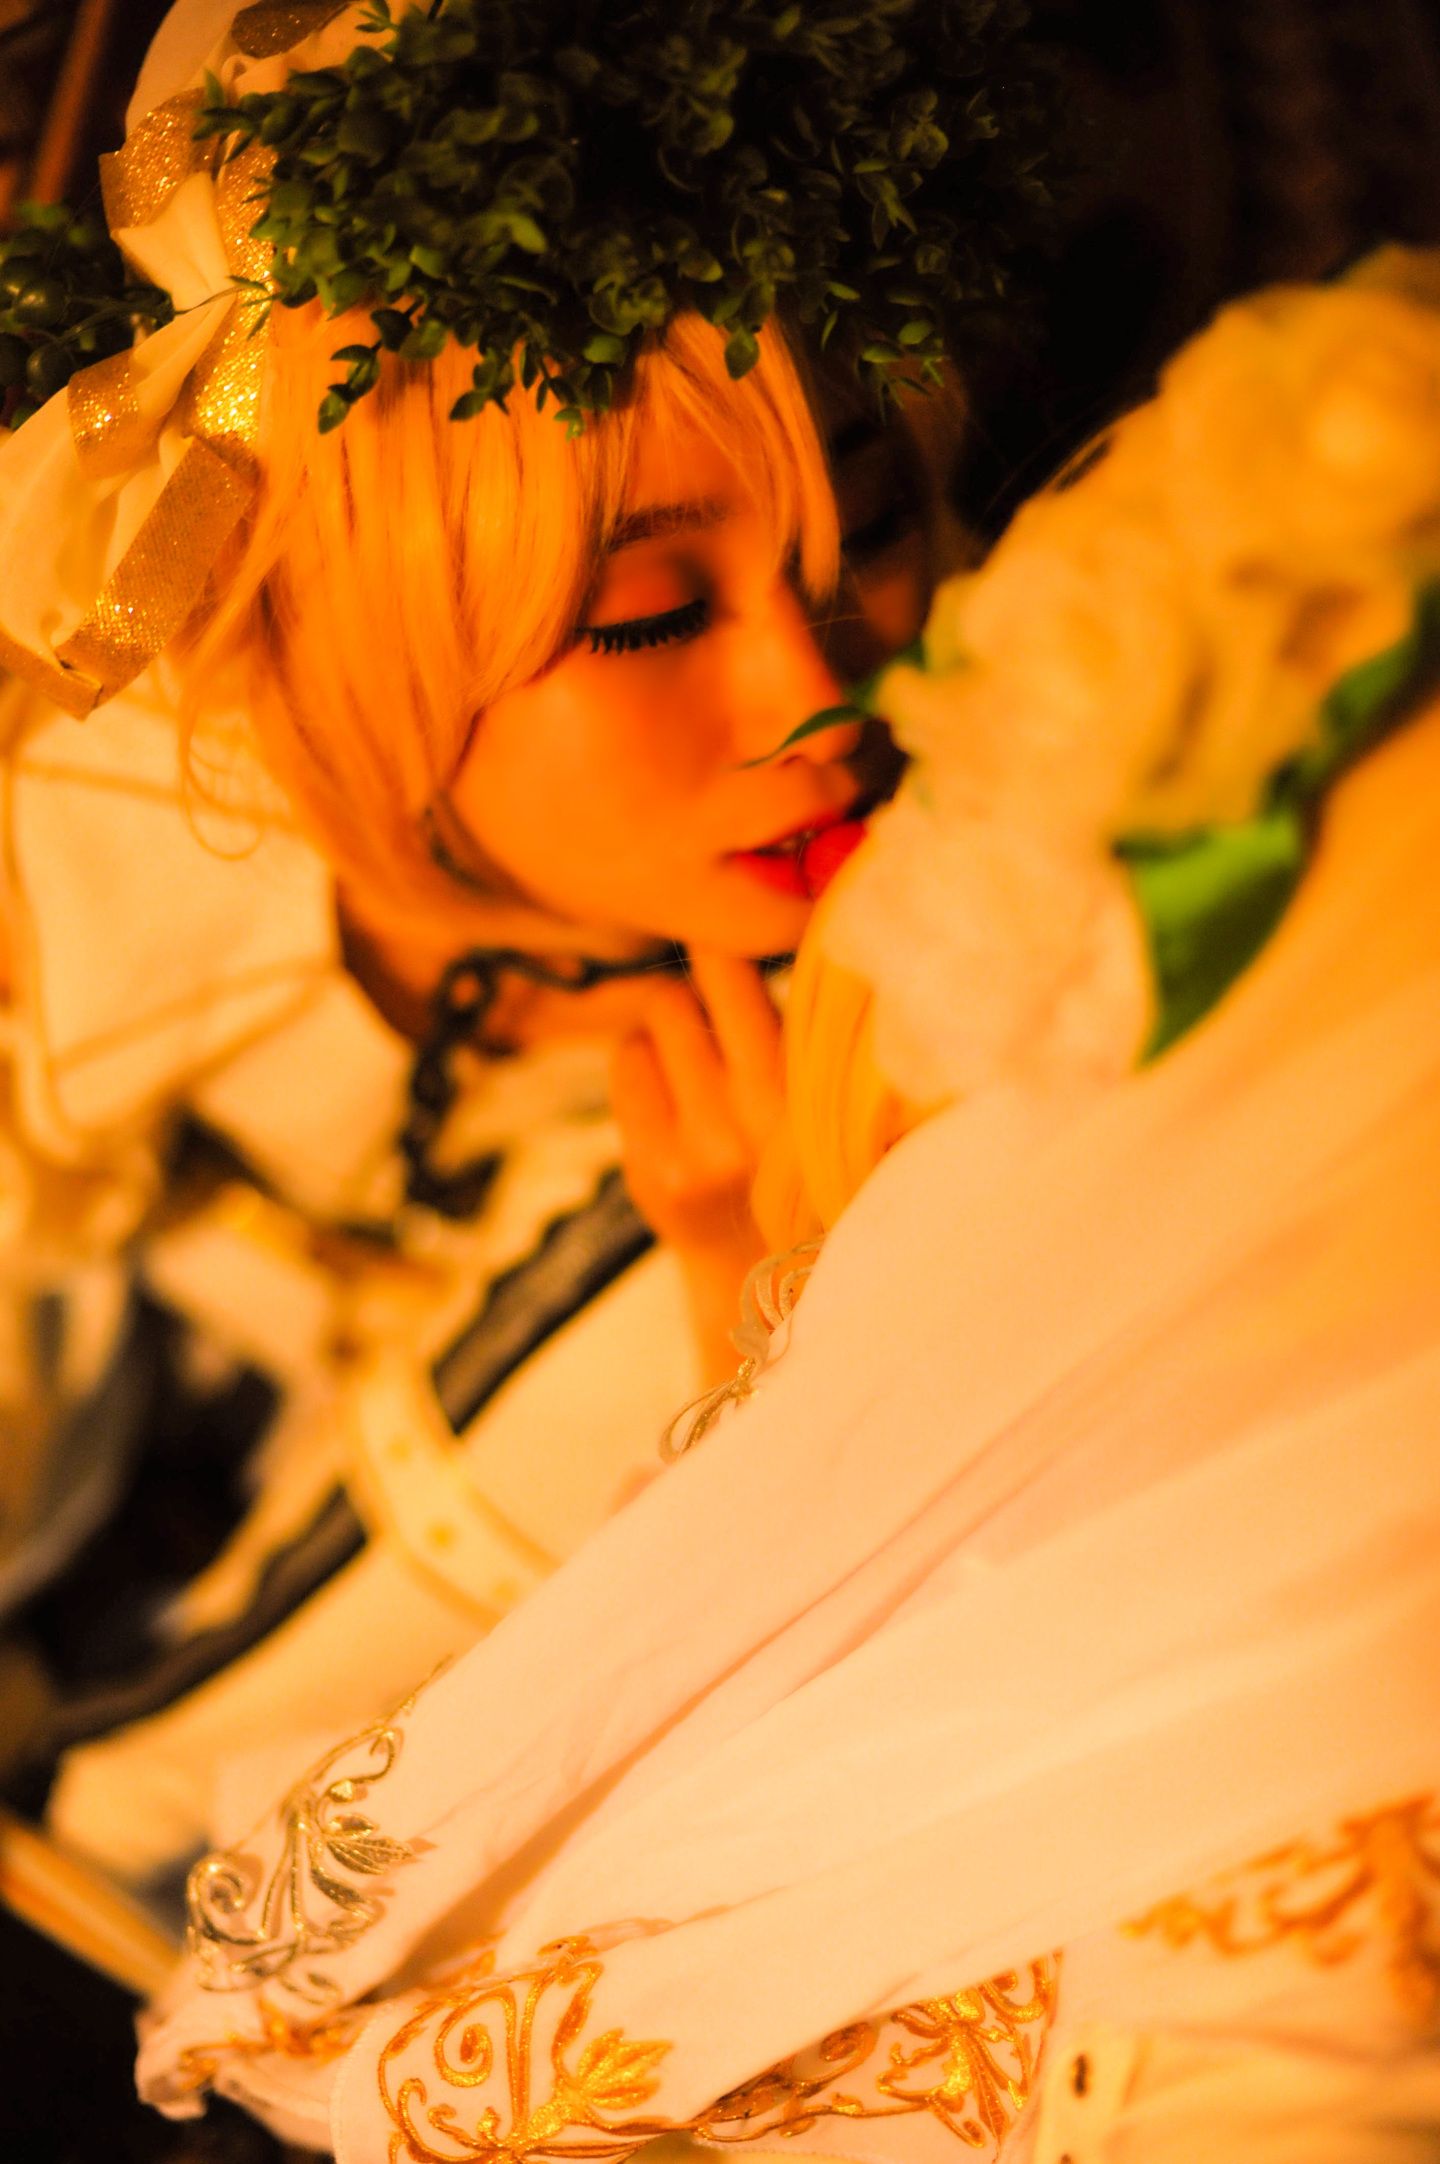 【Fate】花嫁尼禄 - 哔哩哔哩